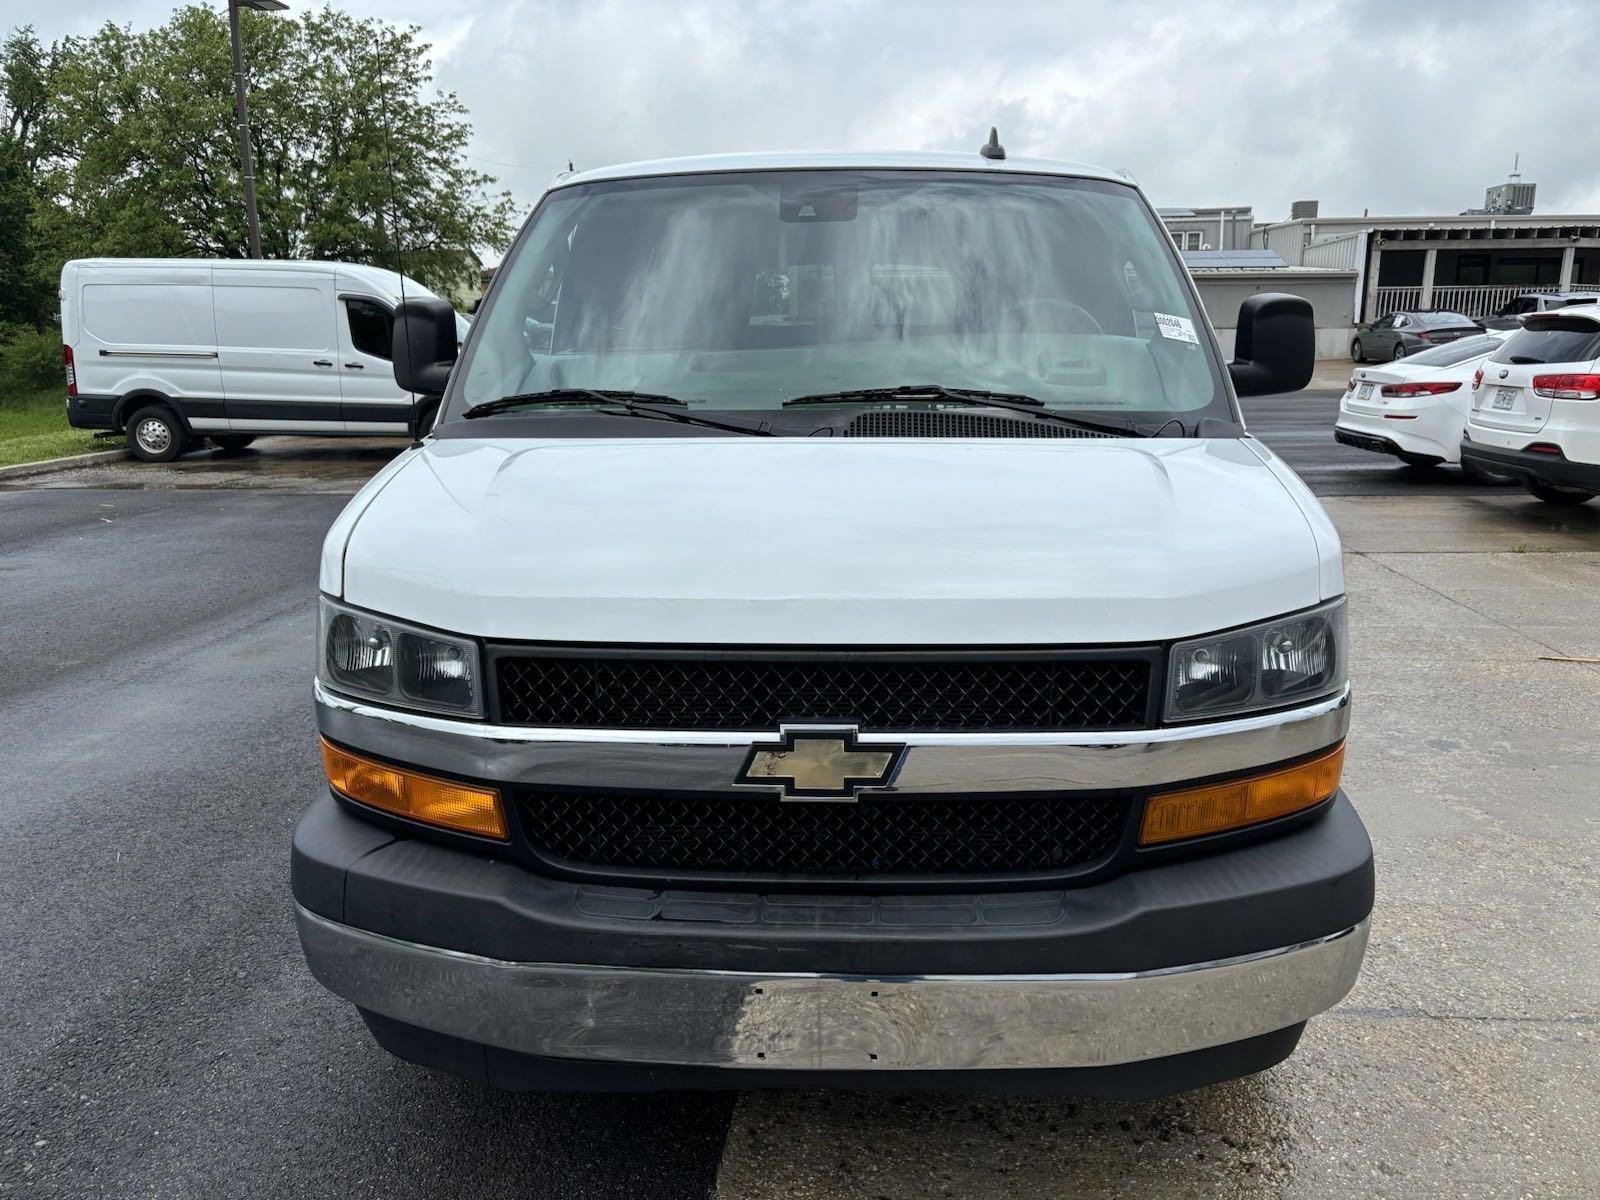 Used 2020 Chevrolet Express Passenger LT Minivans for sale in St Joseph MO